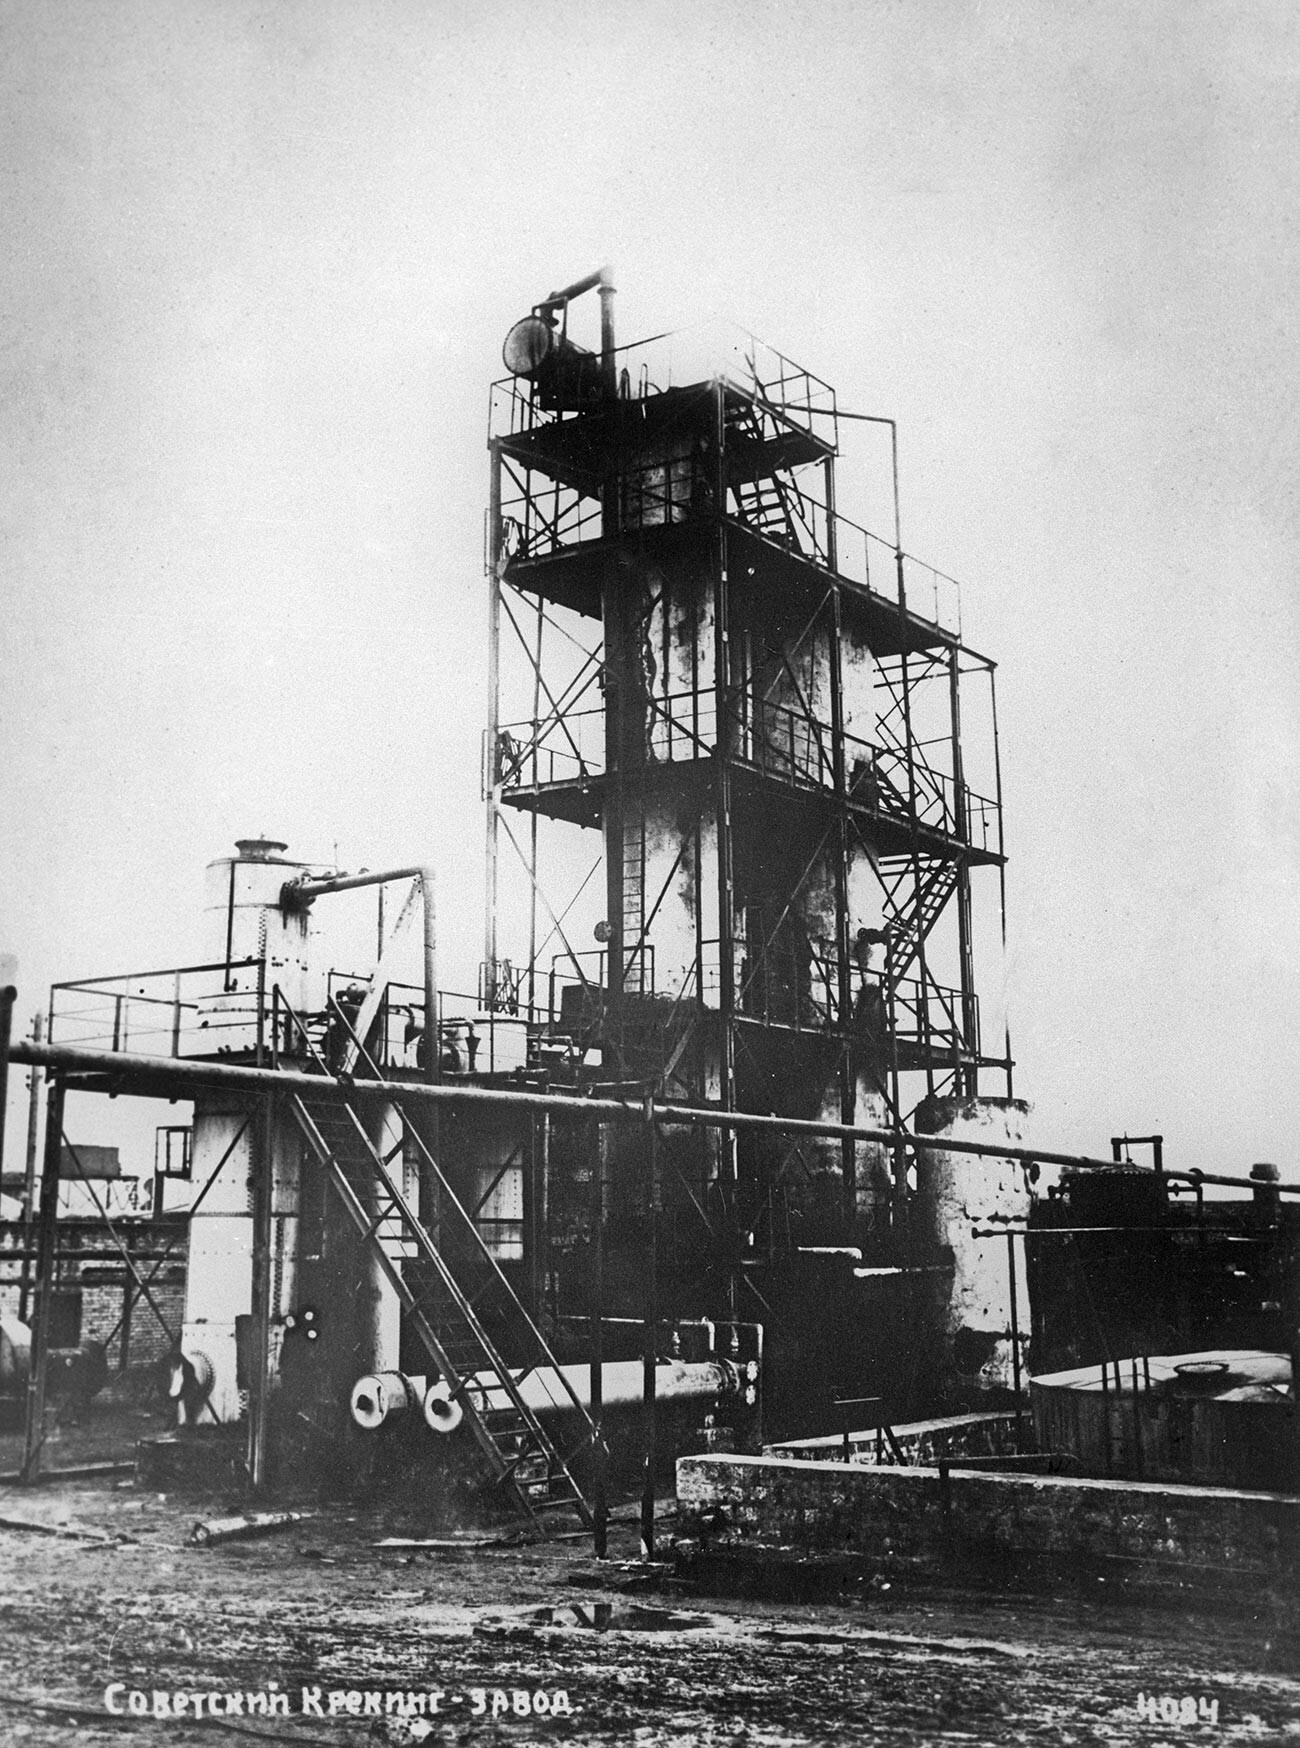 シューホフの分解法を採用したソ連の石油精製プラント。バクー（現在のアゼルバイジャンの首都）